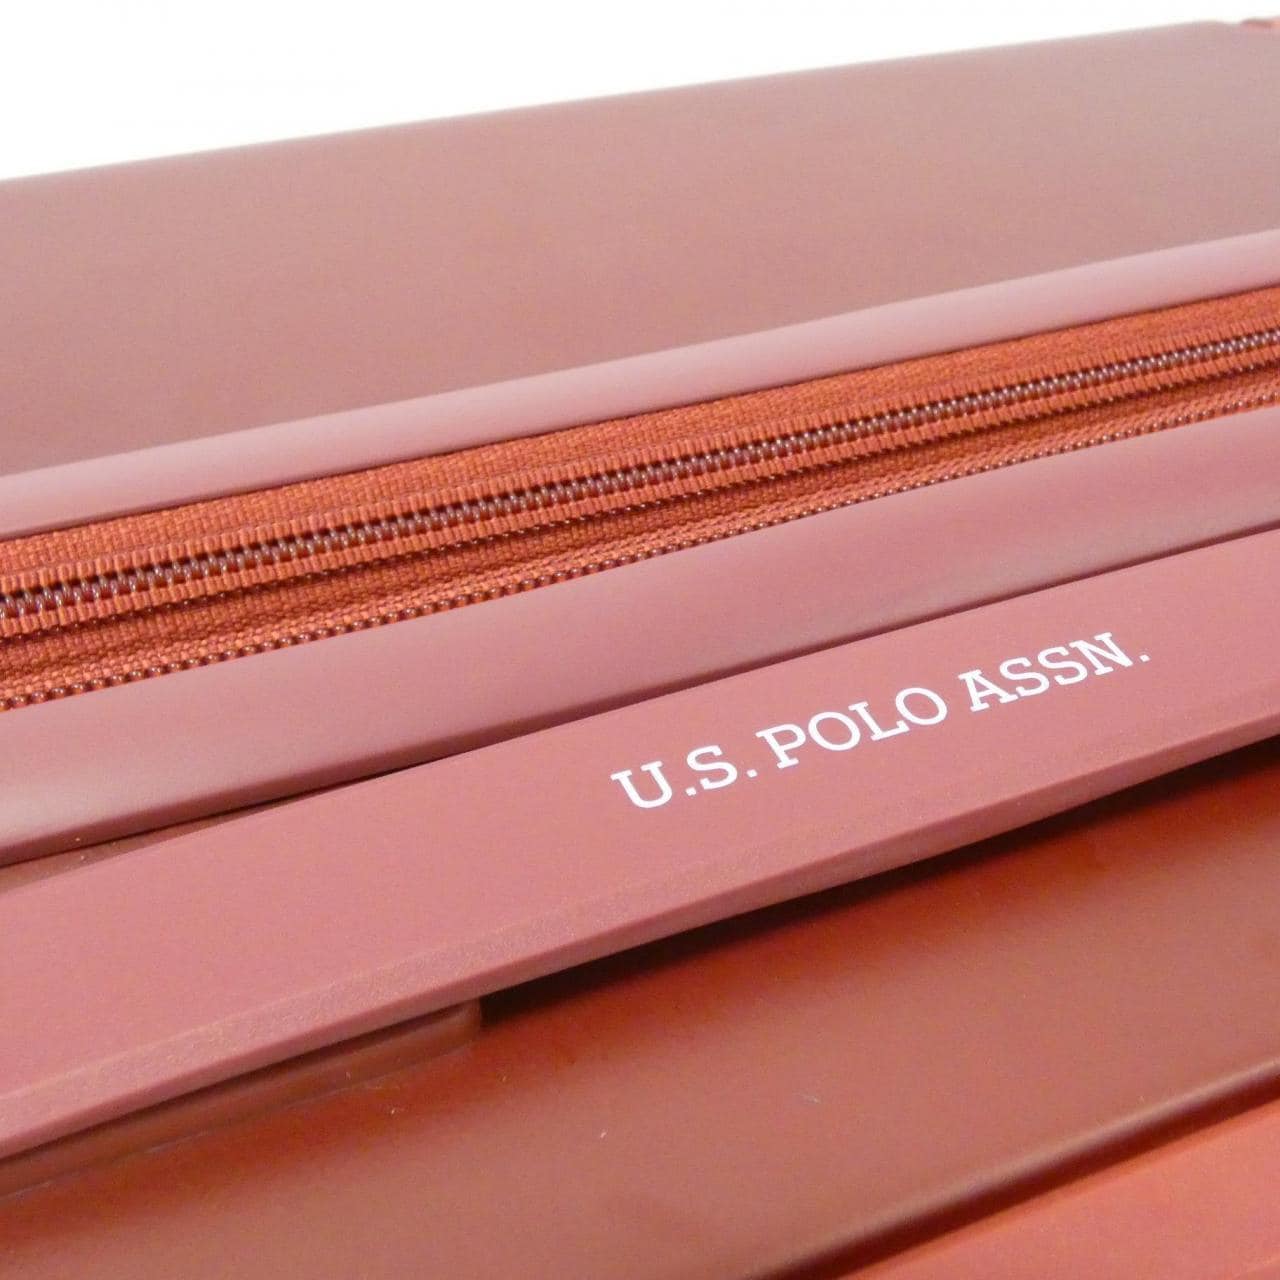 [新品] U.S.POLO ASSN. US3001 60L行李箱